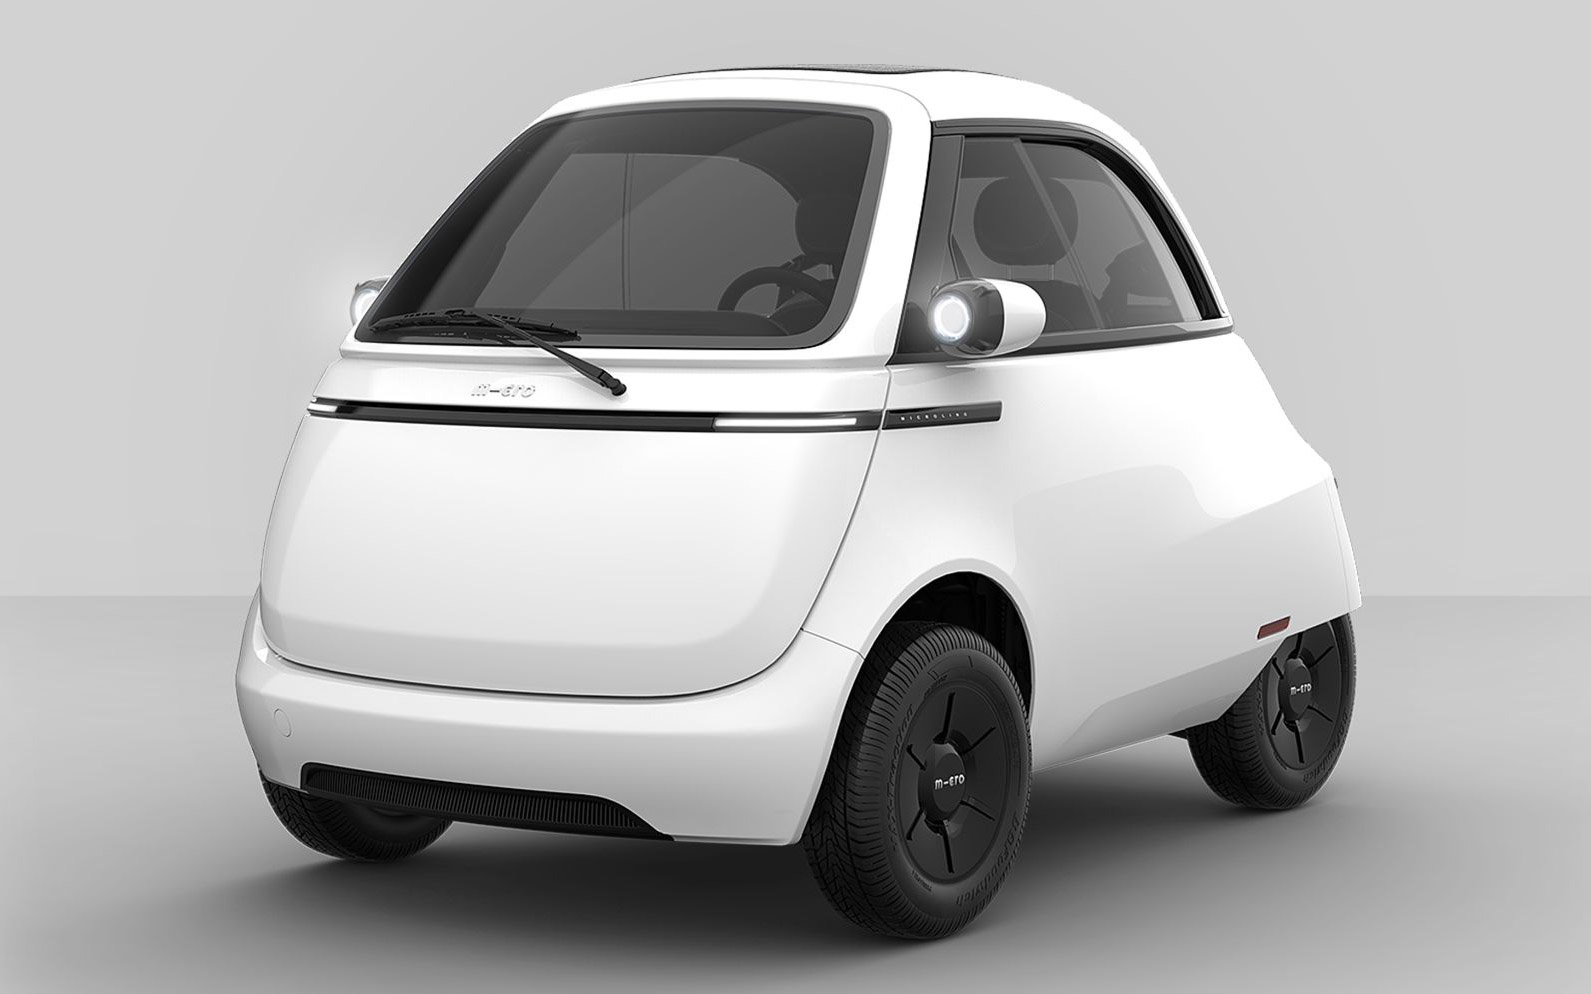 Микро производство. Микролино 2.0. Электромобиль Microlino 2.0. Microlino e-car. Isetta городской автомобиль 2019 нового поколения.